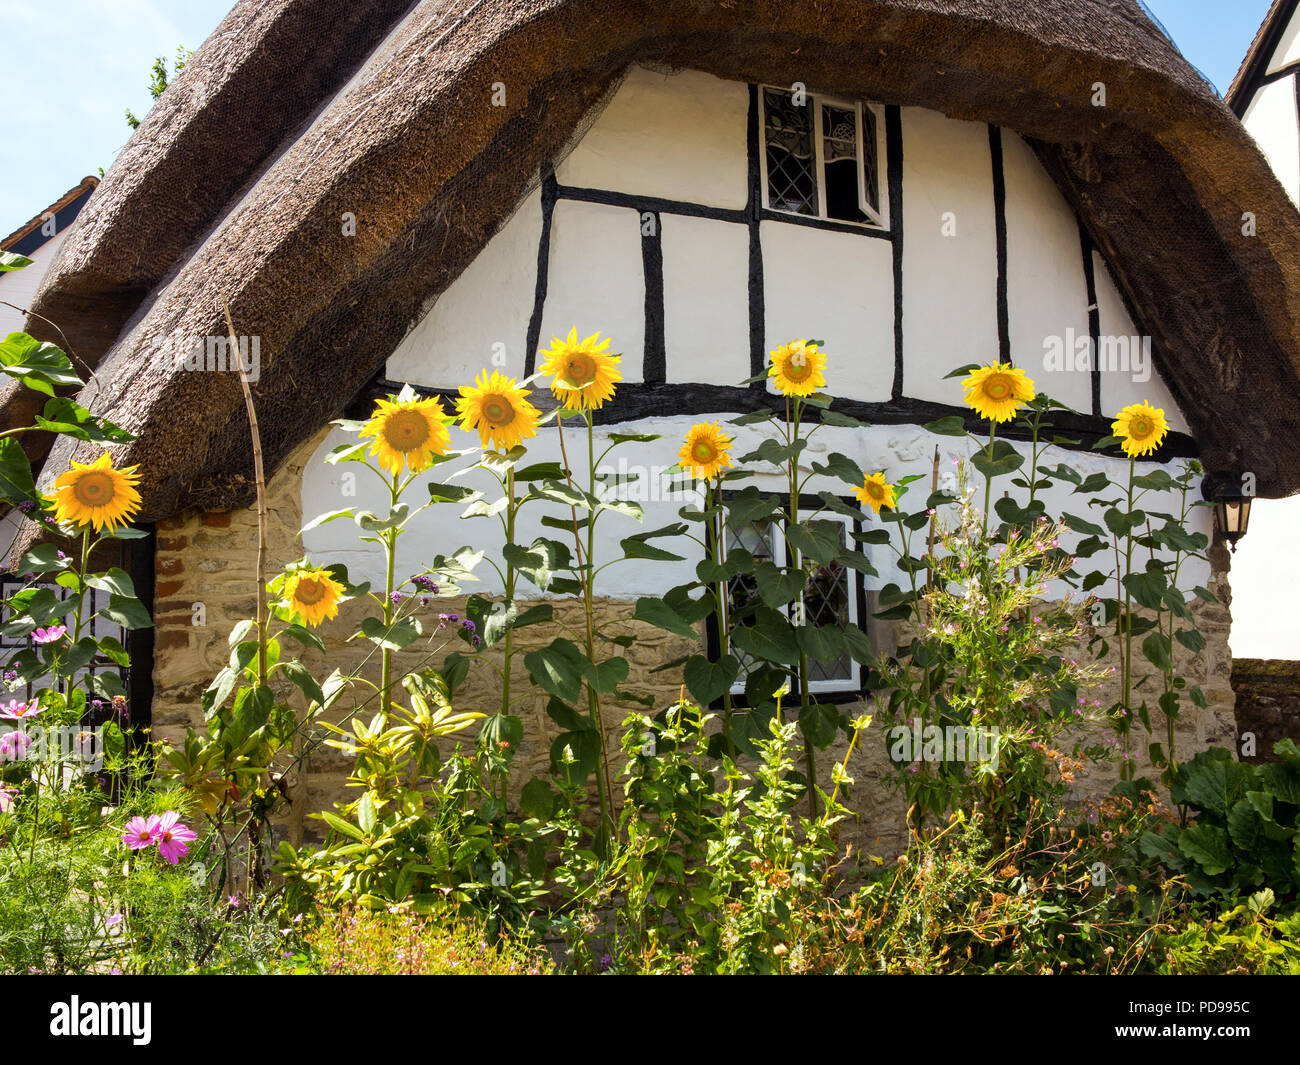 Sonnenblumen in einem englischen Cottage Garten gegen eine schwarze und weiße Fachwerkhaus Reetdach Haus in dem Dorf Cuddington Buckinghamshire UK Stockfoto